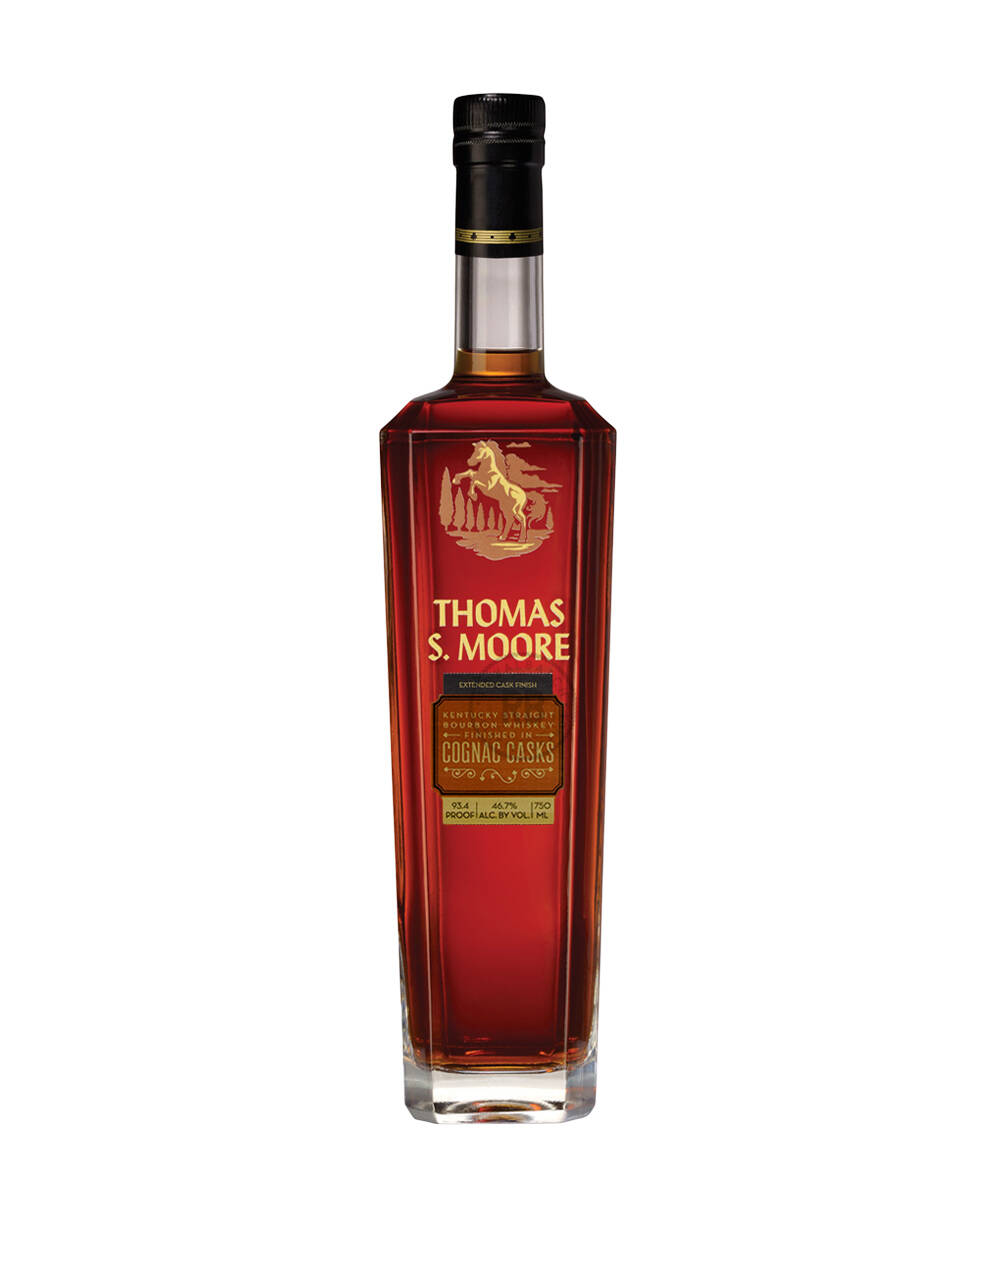 Thomas S. Moore Cognac Casks Bourbon Whiskey